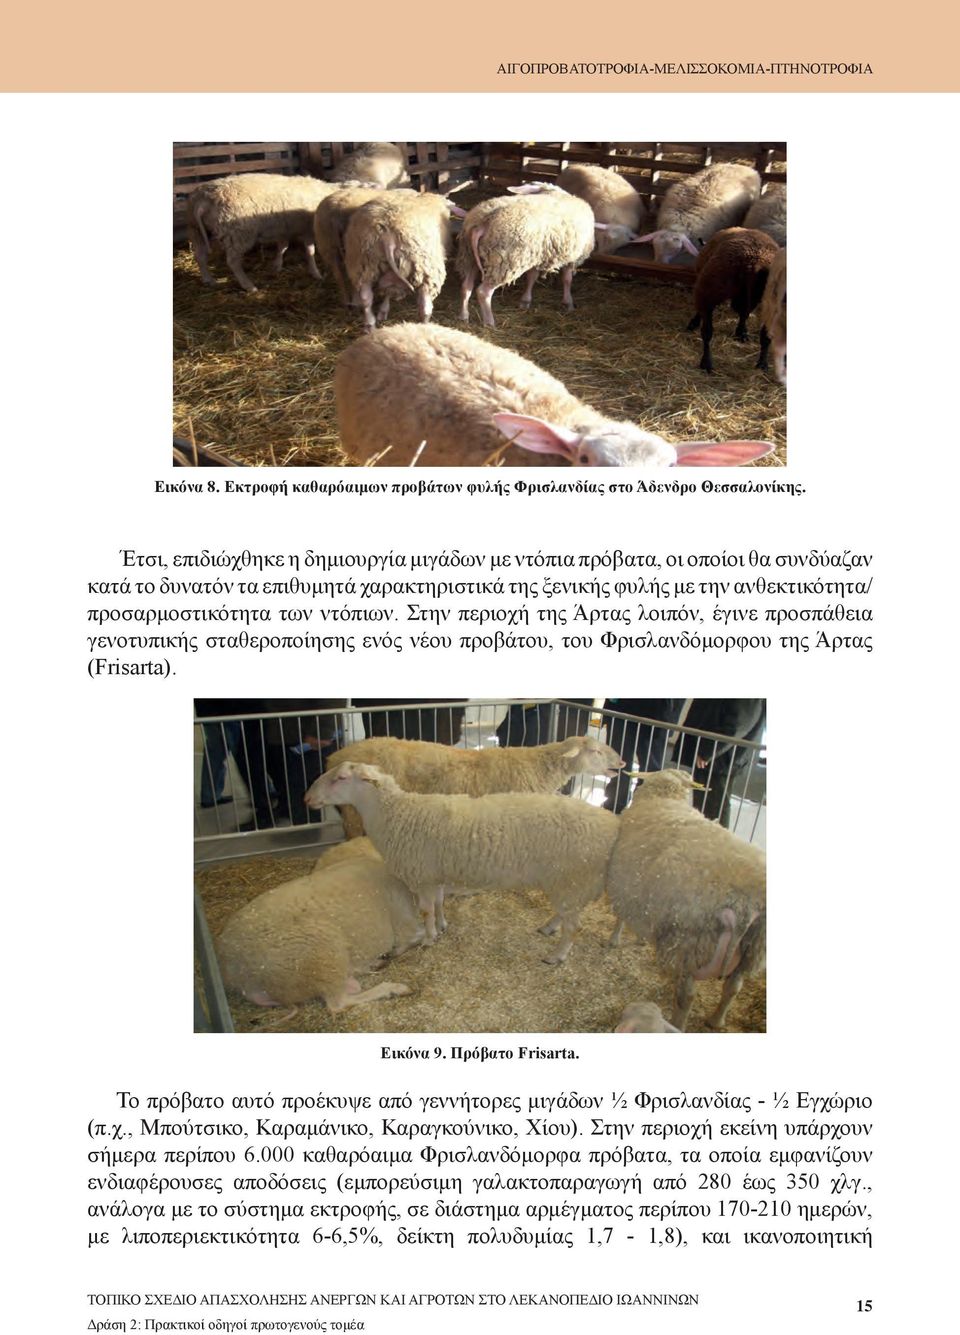 Στην περιοχή της Άρτας λοιπόν, έγινε προσπάθεια γενοτυπικής σταθεροποίησης ενός νέου προβάτου, του Φρισλανδόμορφου της Άρτας (Frisarta). Εικόνα 9. Πρόβατο Frisarta.